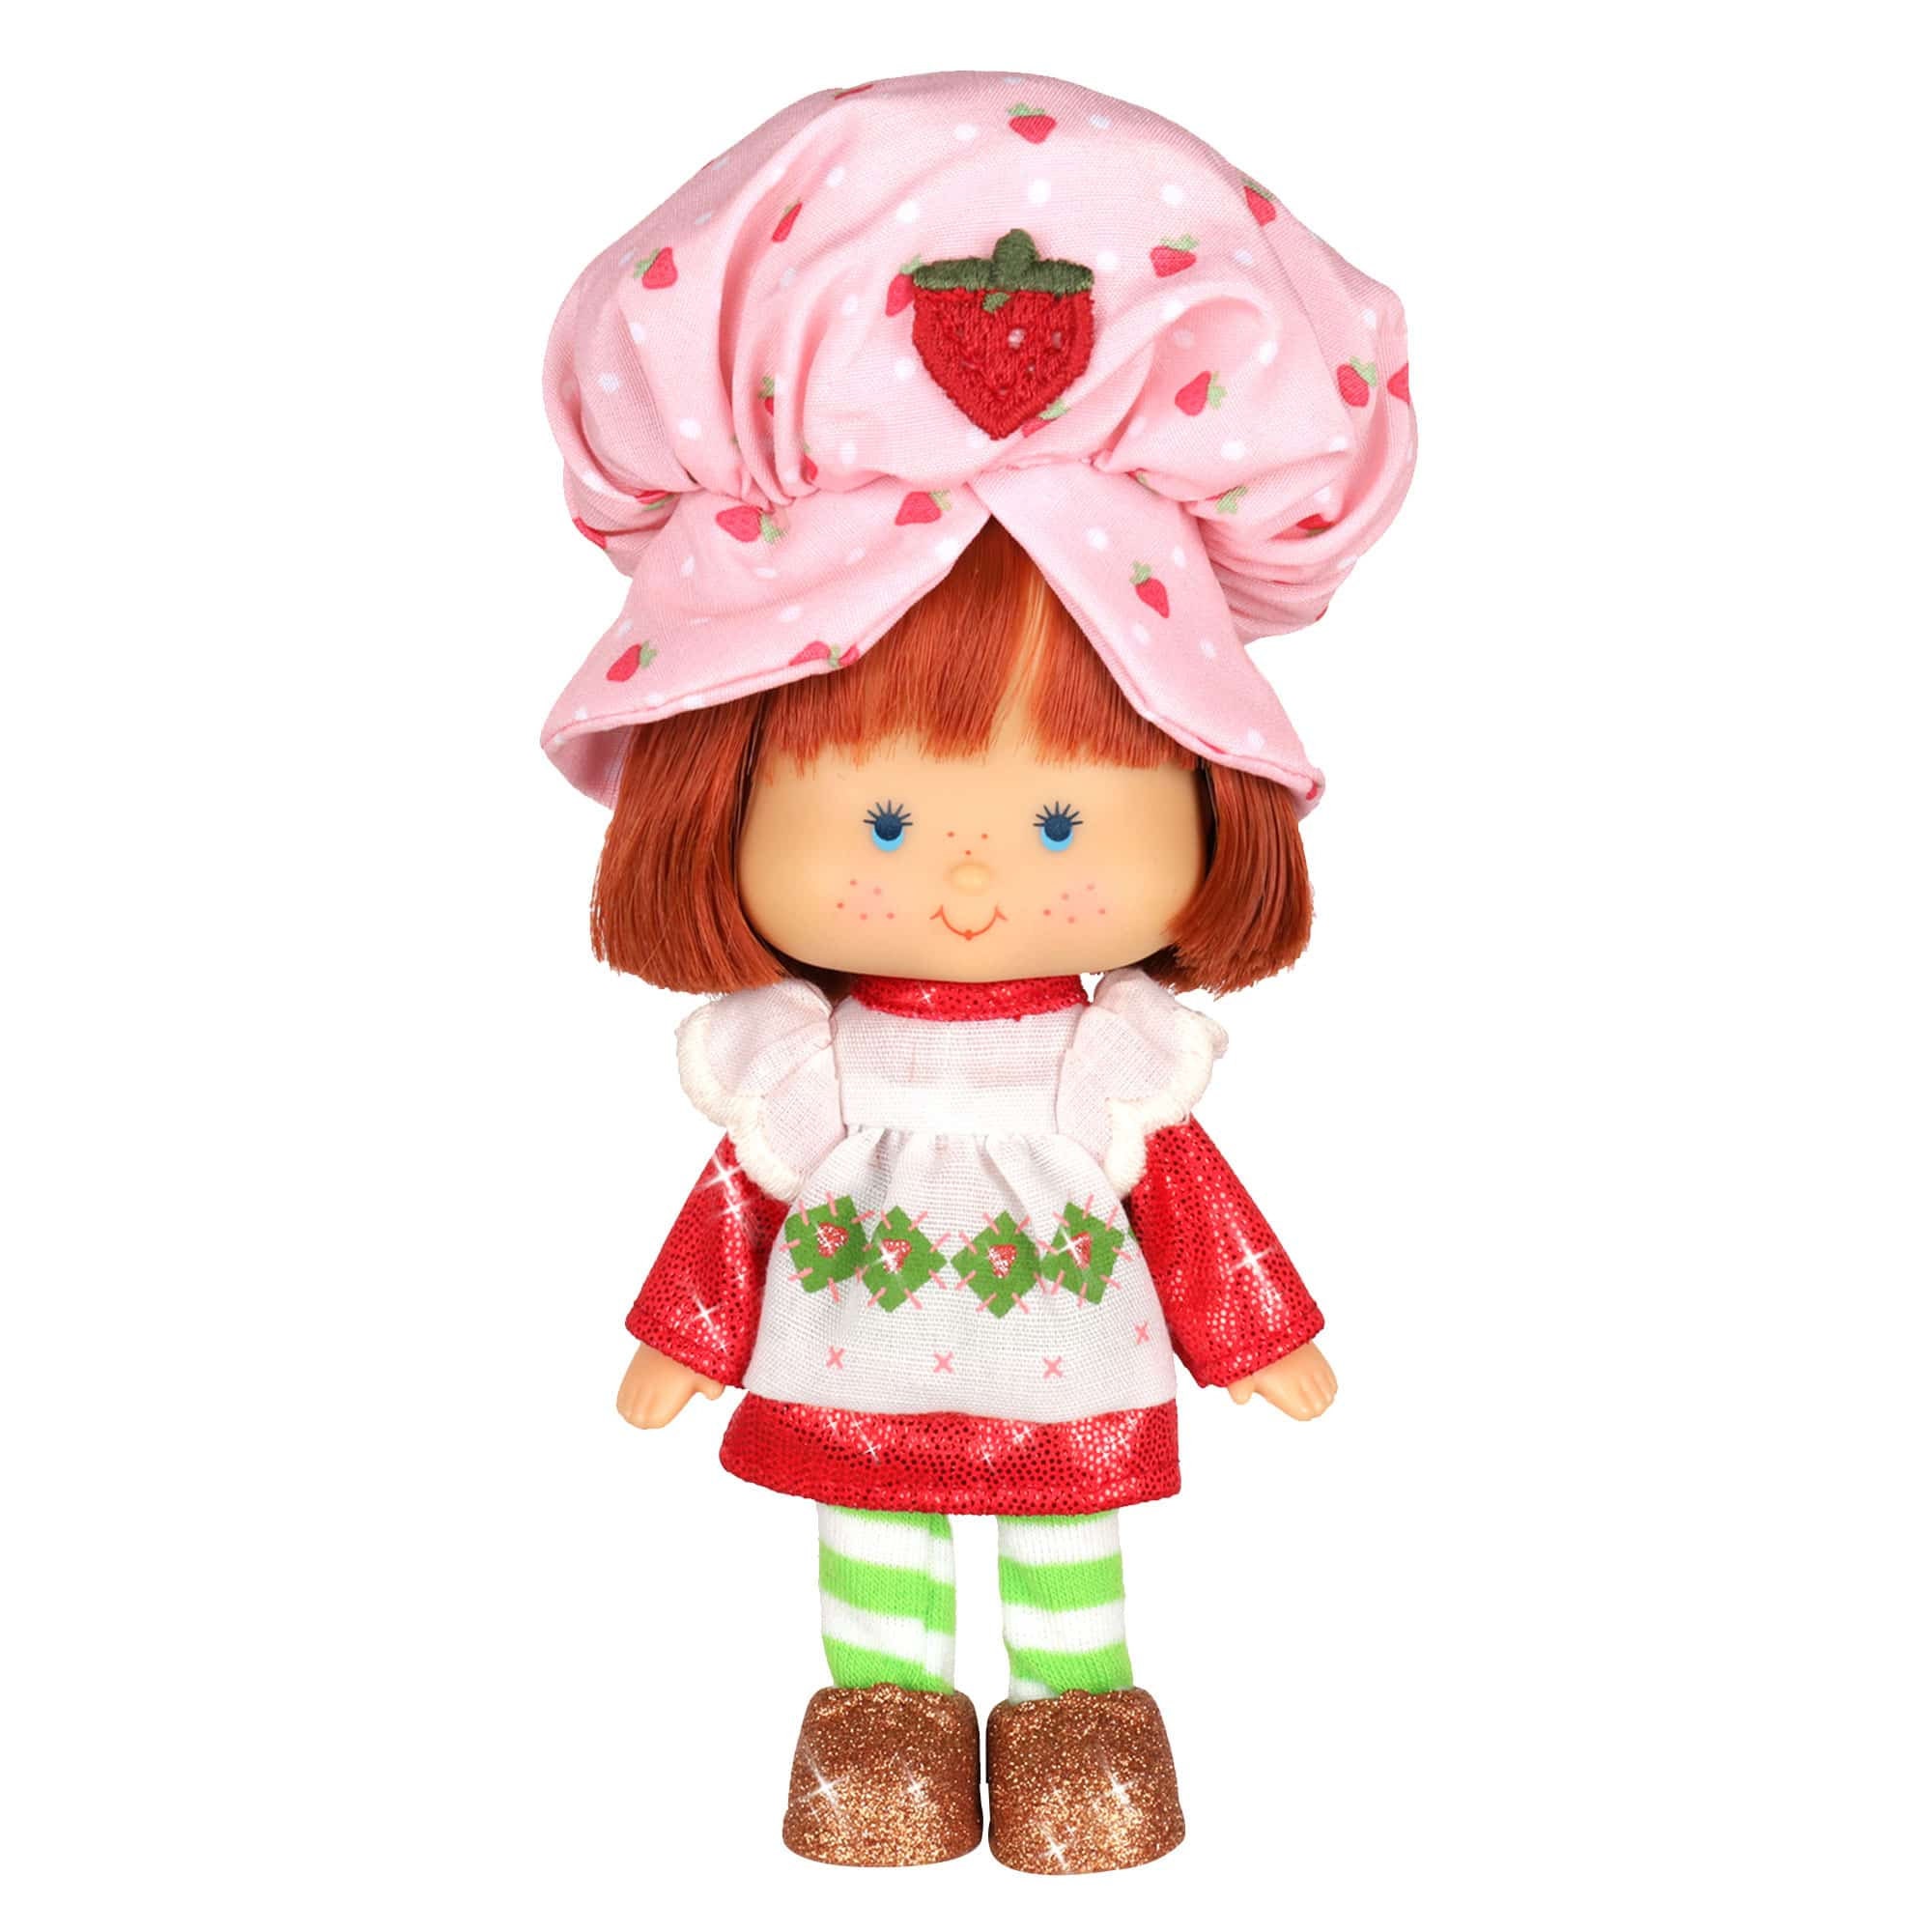 6 Retro Strawberry Shortcake Doll Etsy